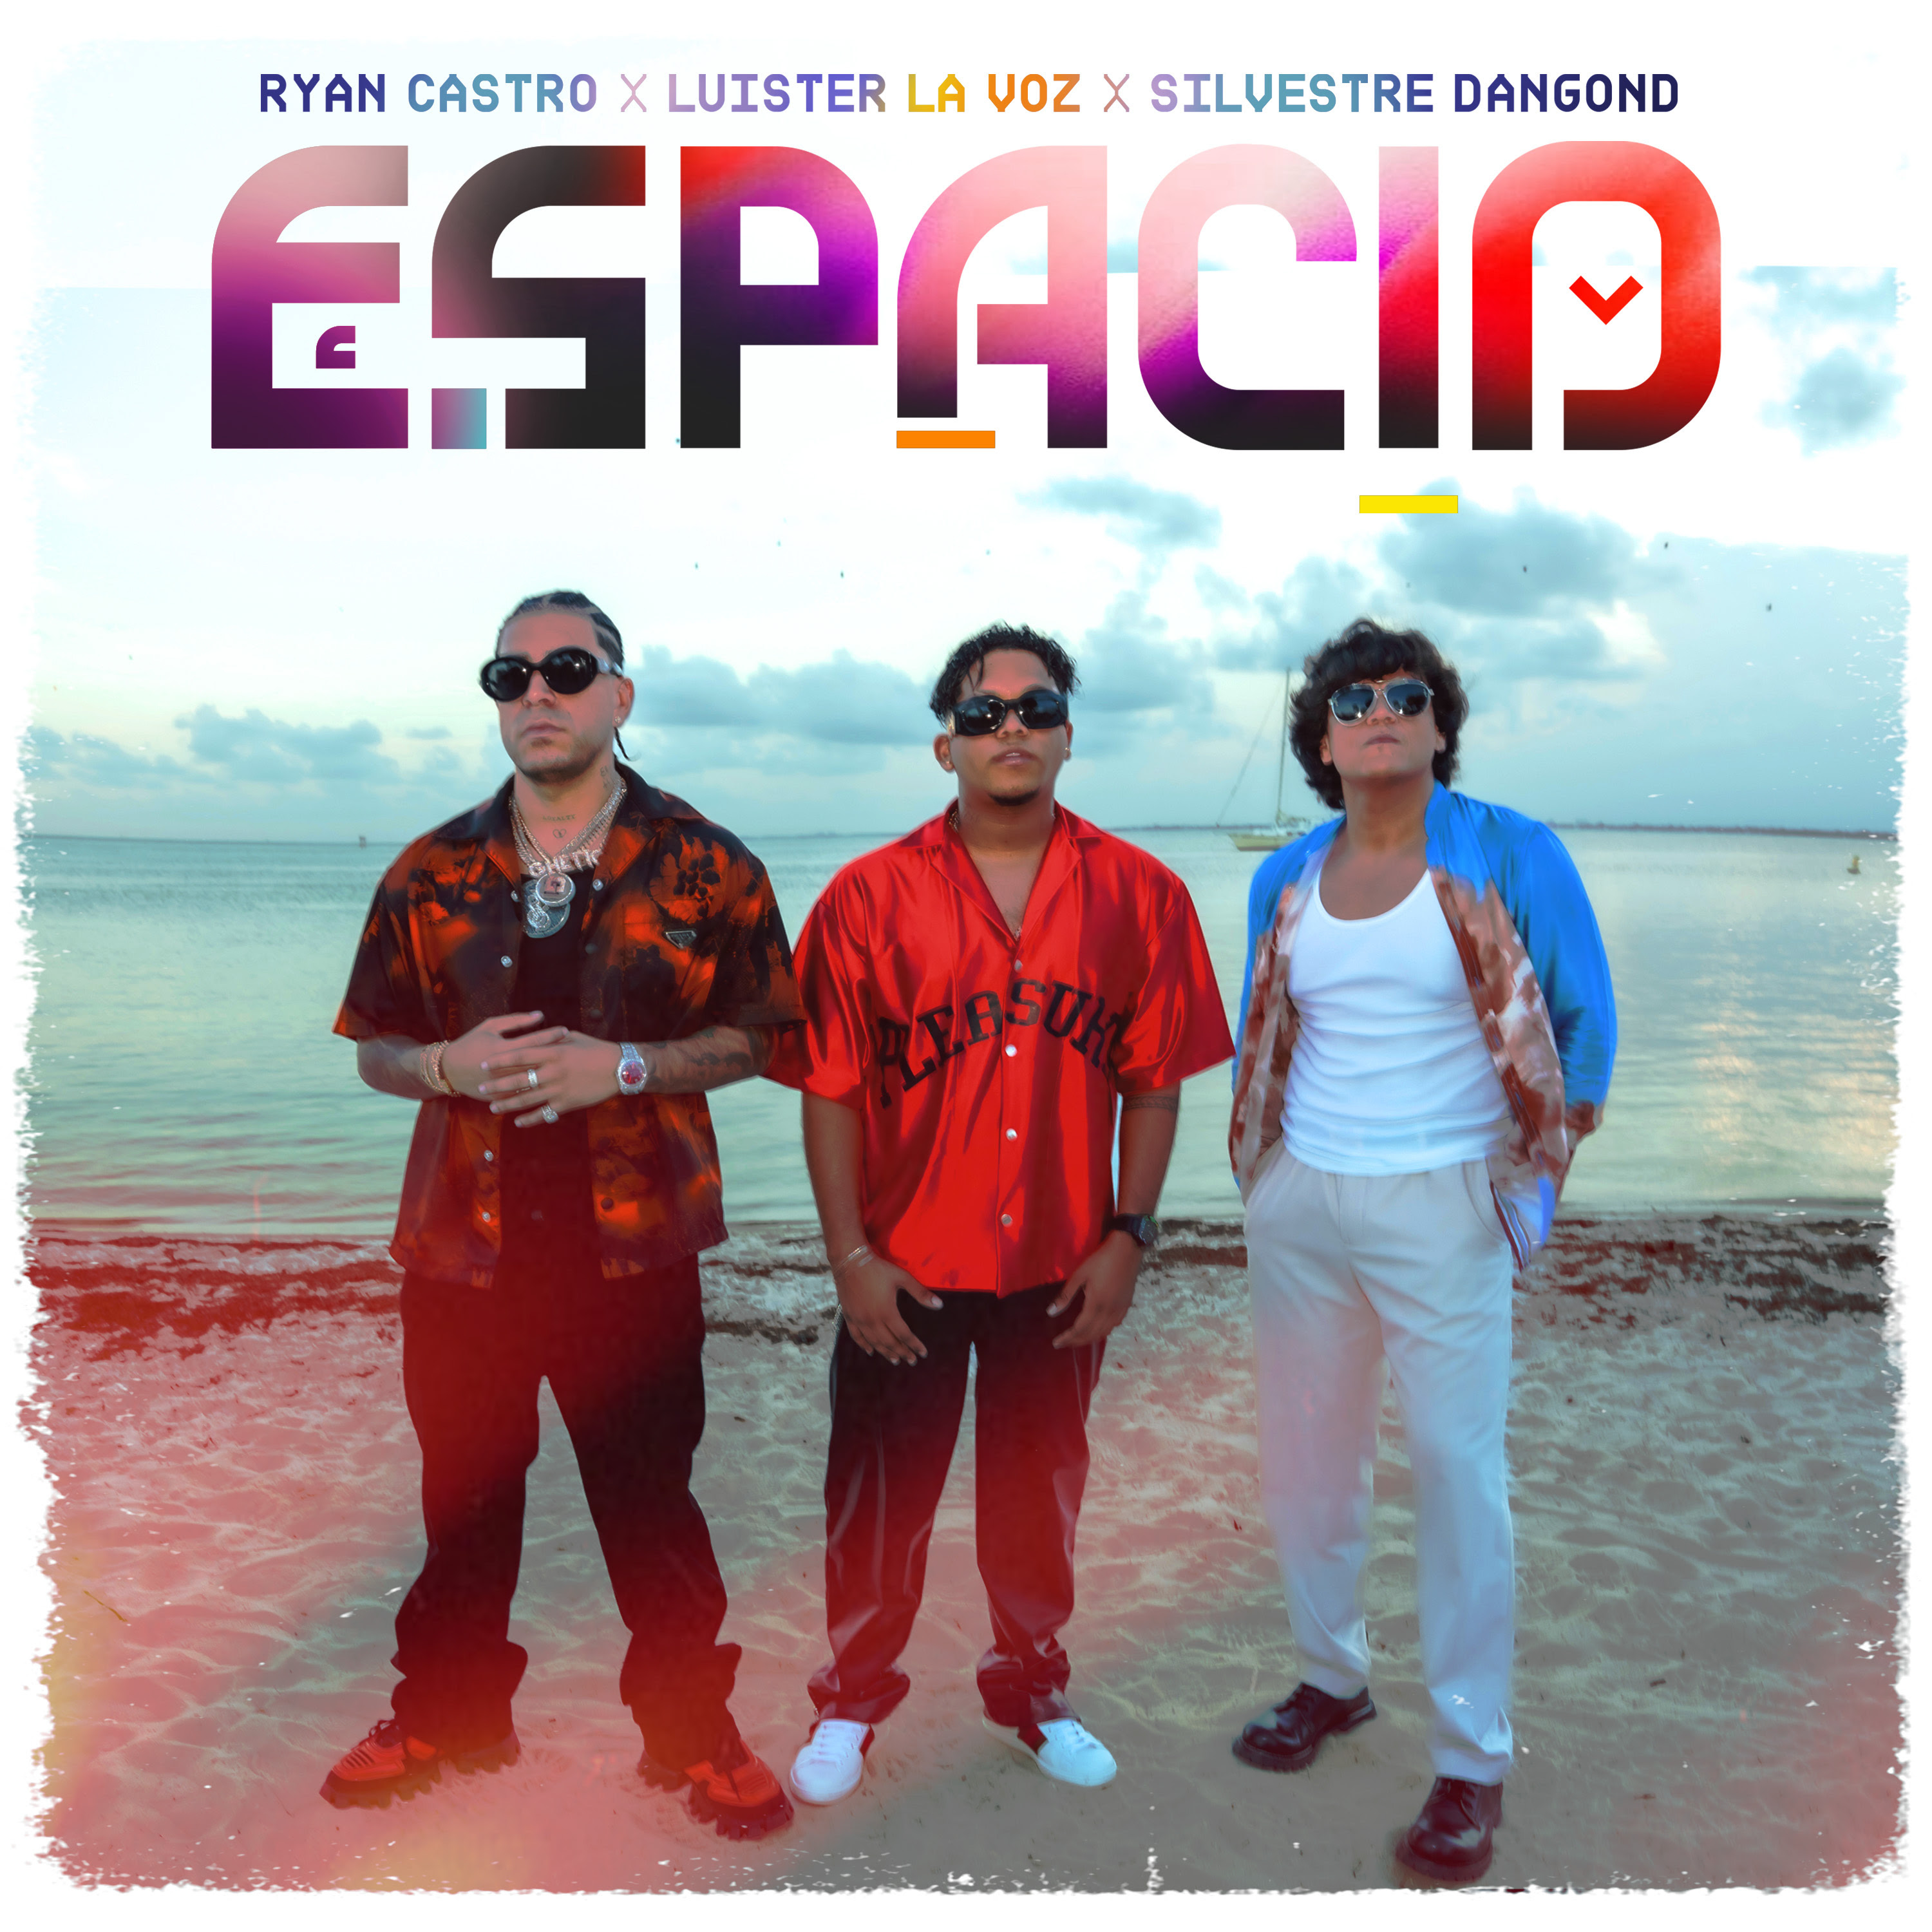  “Espacio Remix” la fusión musical del momento de Luister La Voz, Silvestre Dangond y Ryan Castro, continúa punteando en tendencias musicales